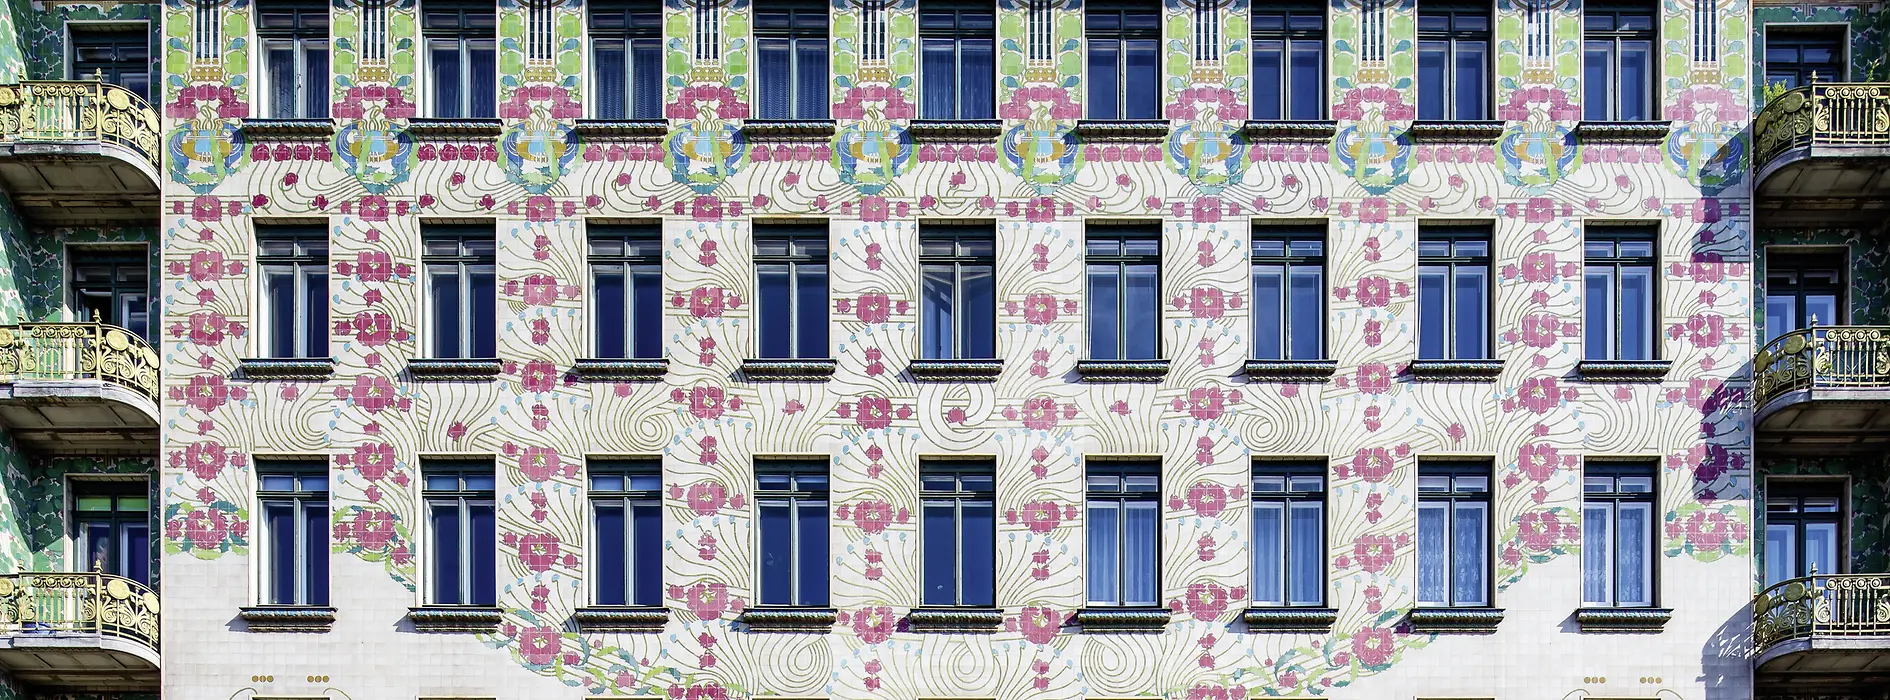 Maisons de la Wienzeile, façade Art nouveau, maison Majolika